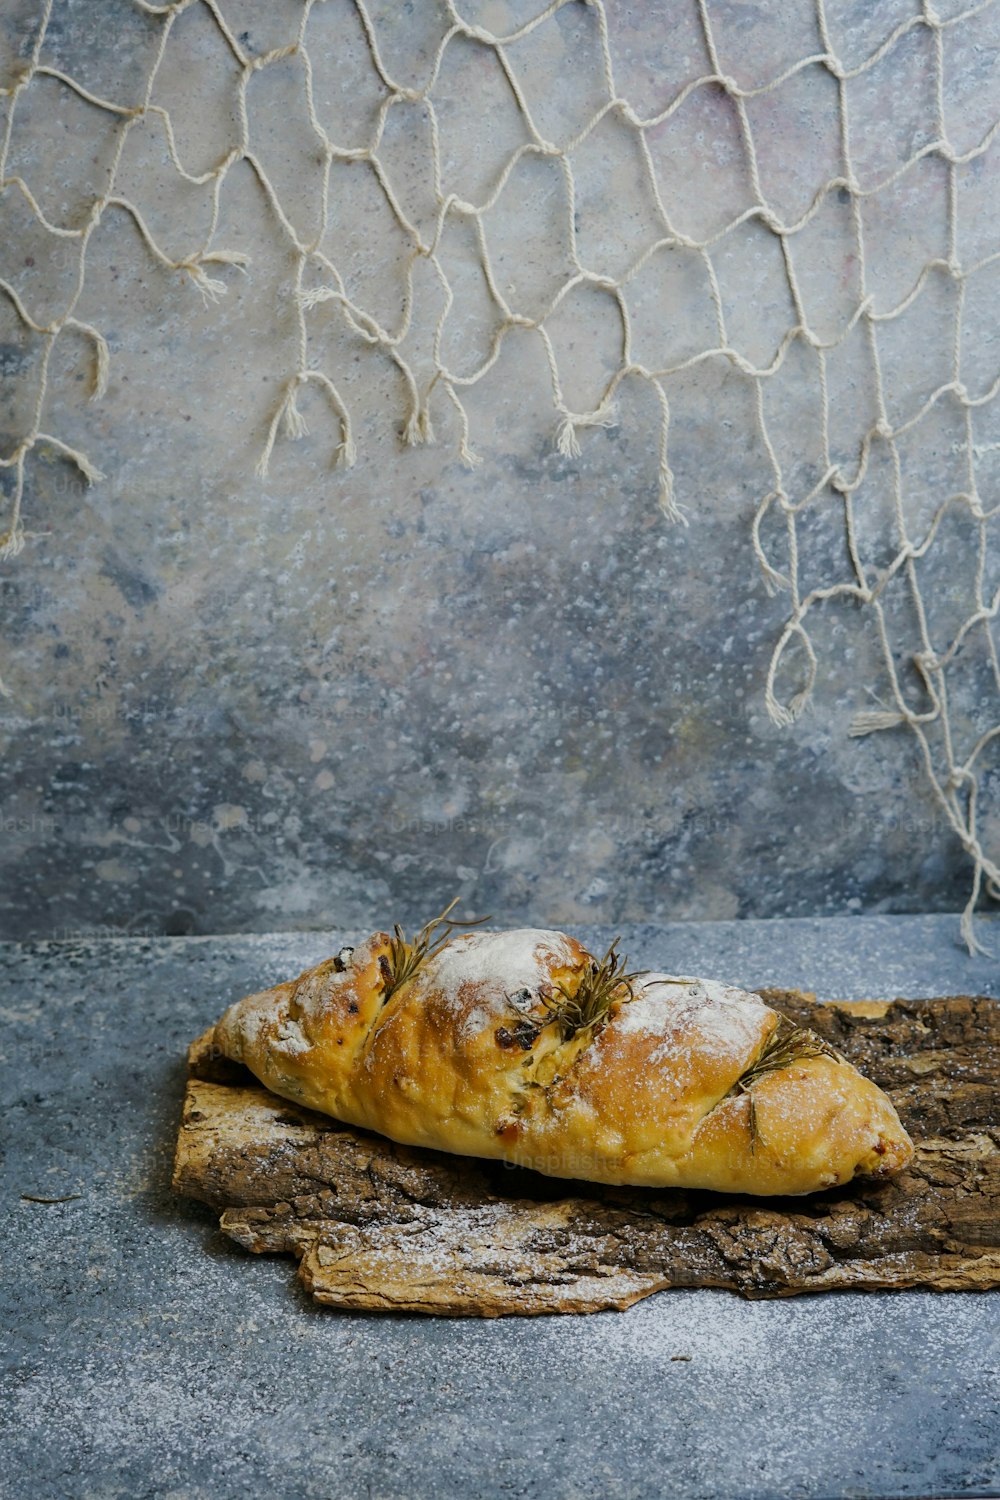 나무 조각 위에 앉아있는 빵 조각